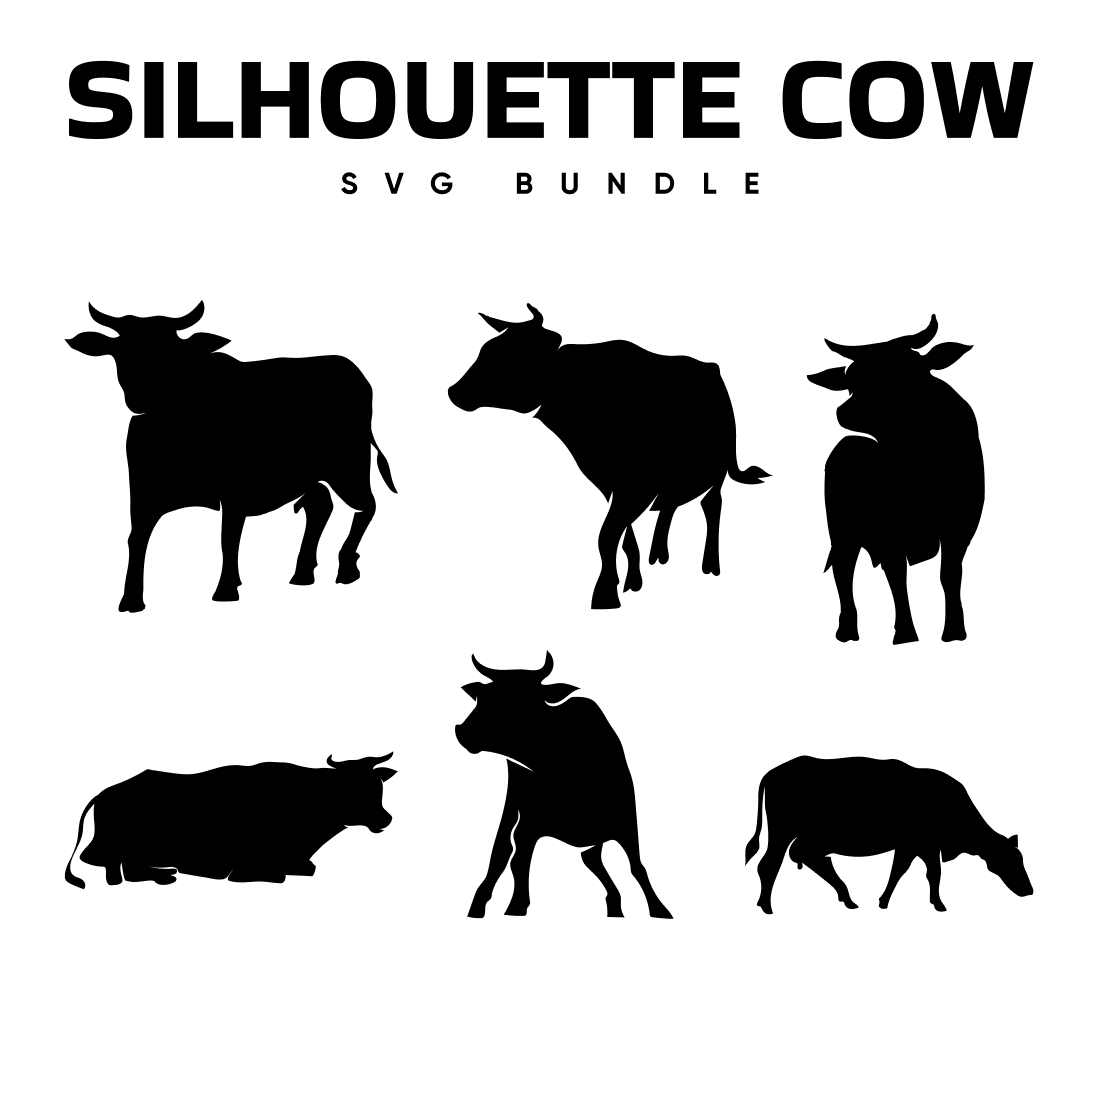 Silhouette cow svg bundle.